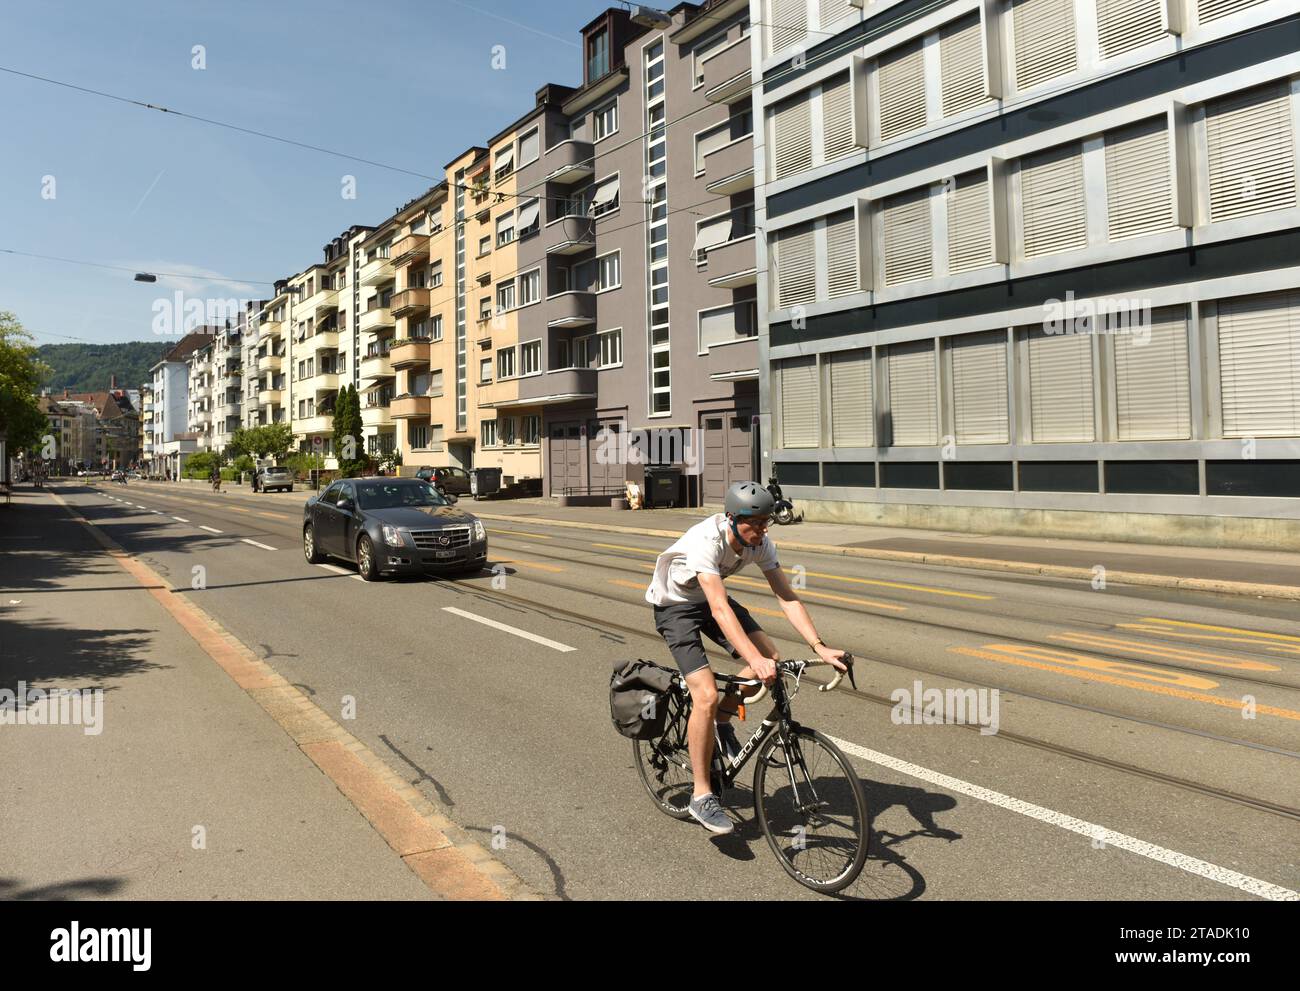 Zurich, Switzerland - June 03, 2017: Bicyclist on street of Zurich. Daily life in Zurich. Stock Photo